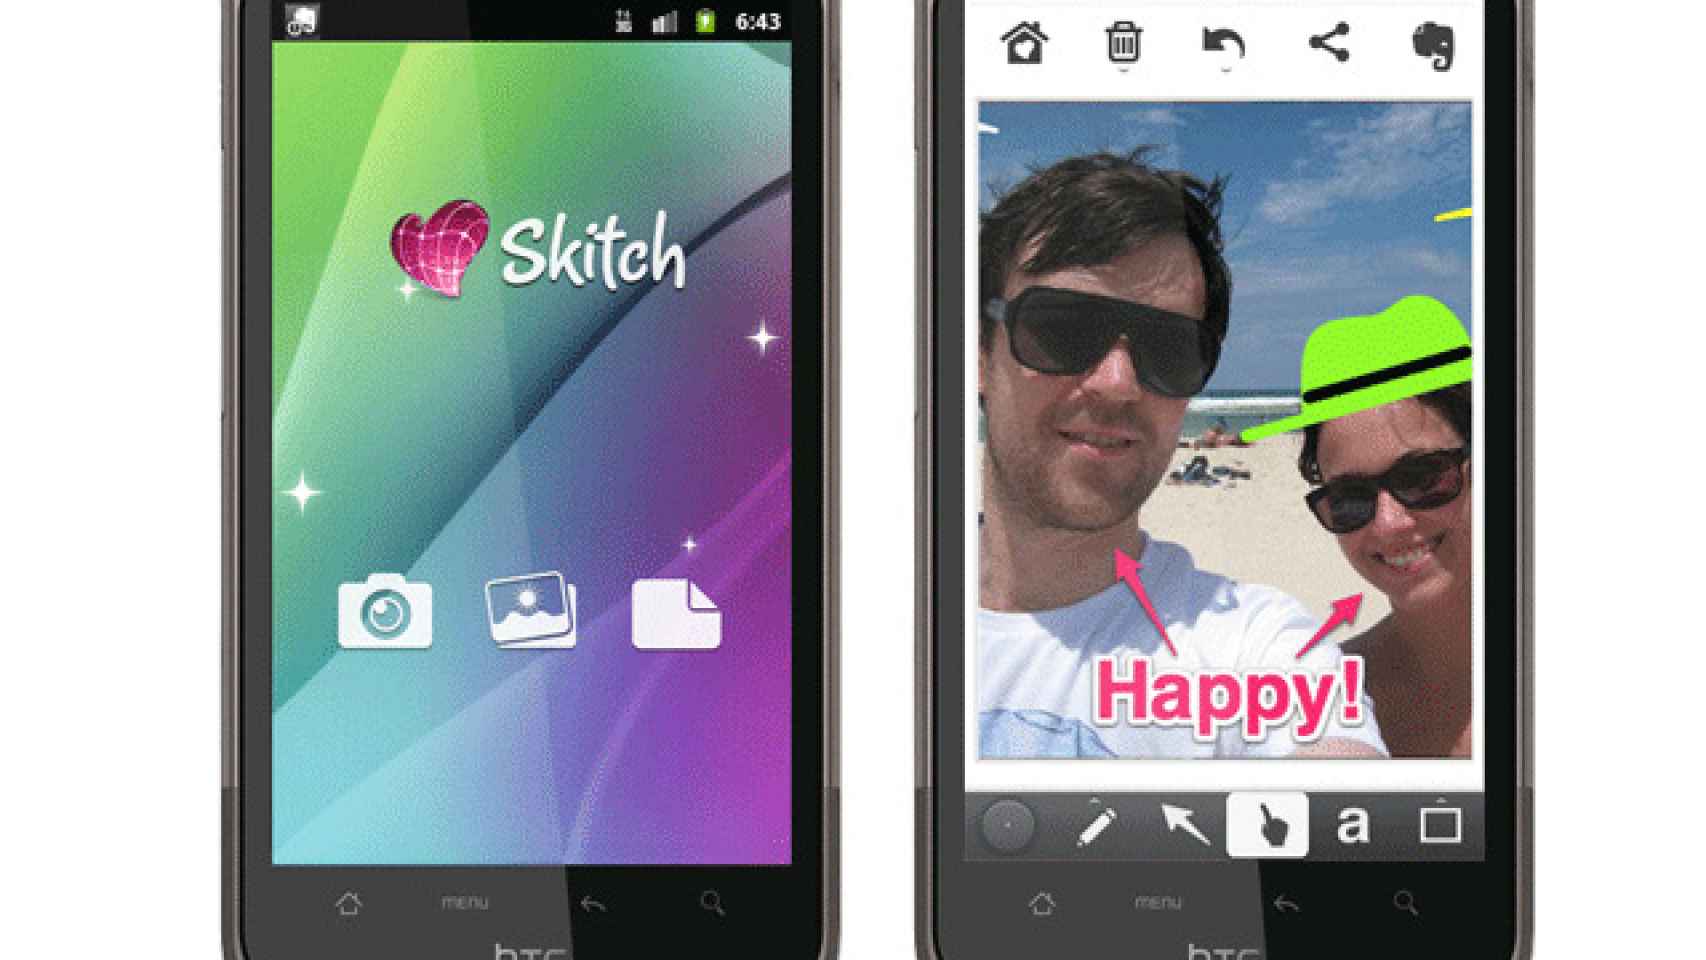 Evernote compra Skitch, disponible para Android la mejor herramienta de notas gráficas